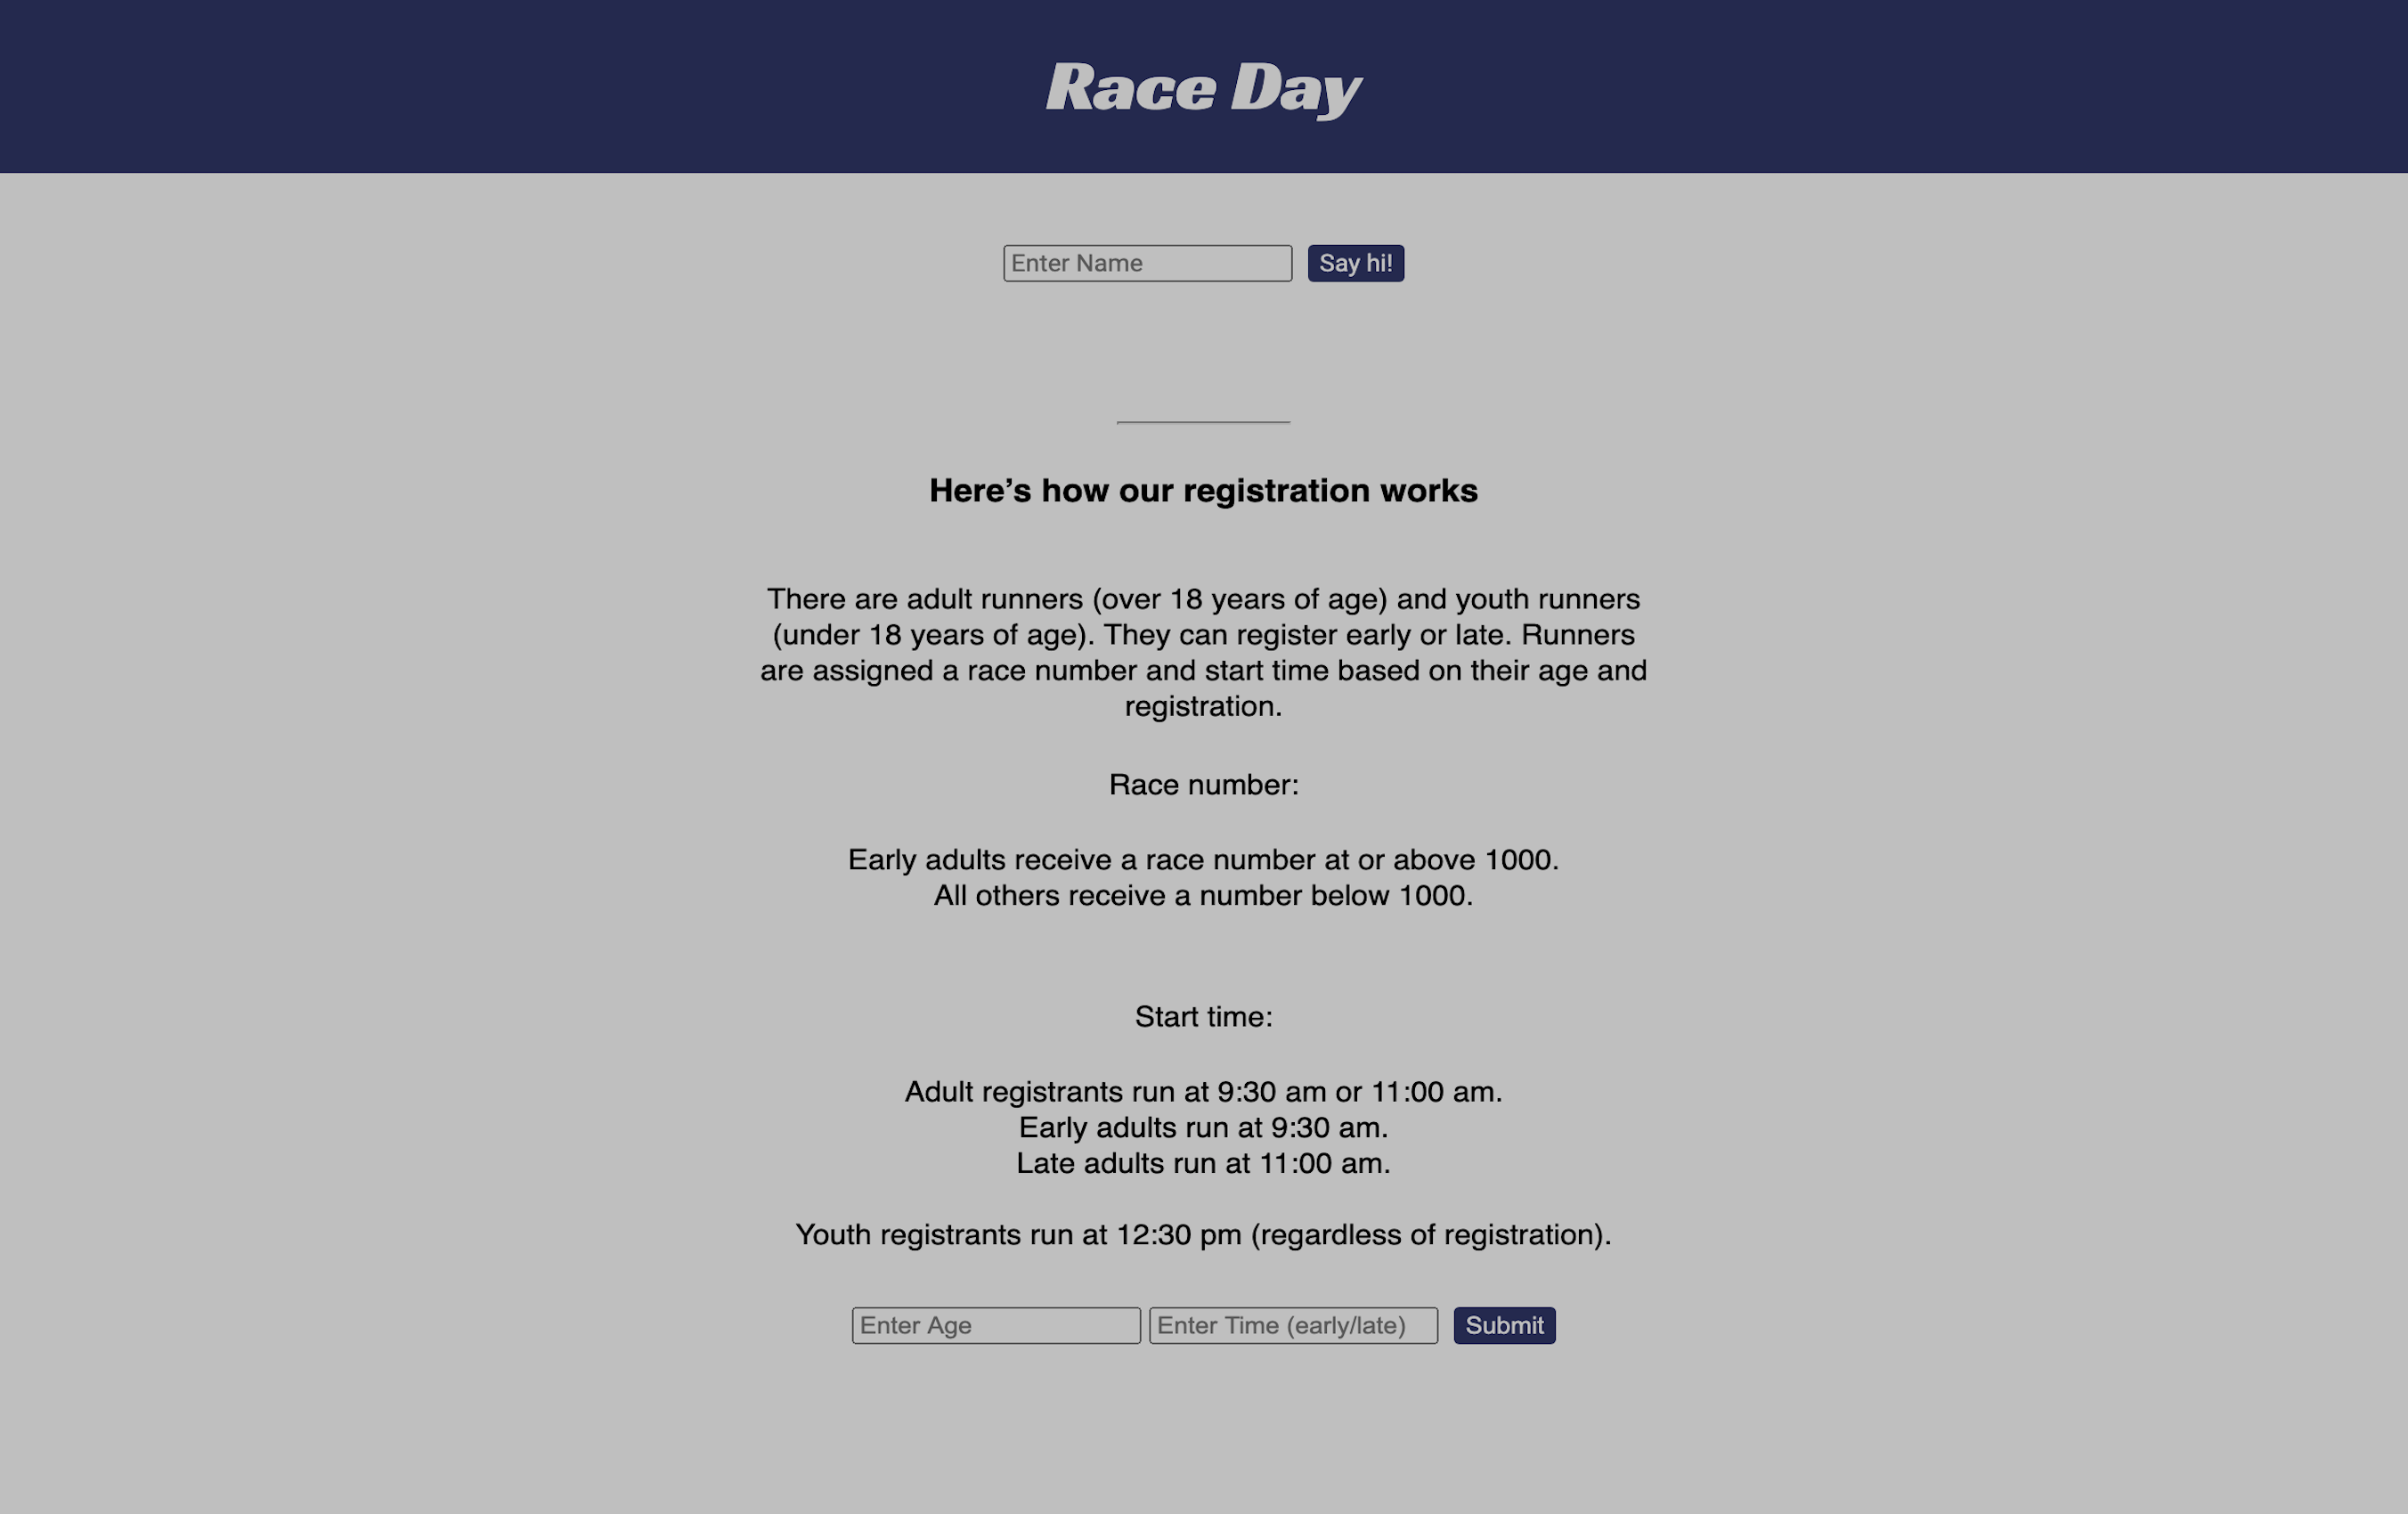 https://jboyle1.github.io/race-day/